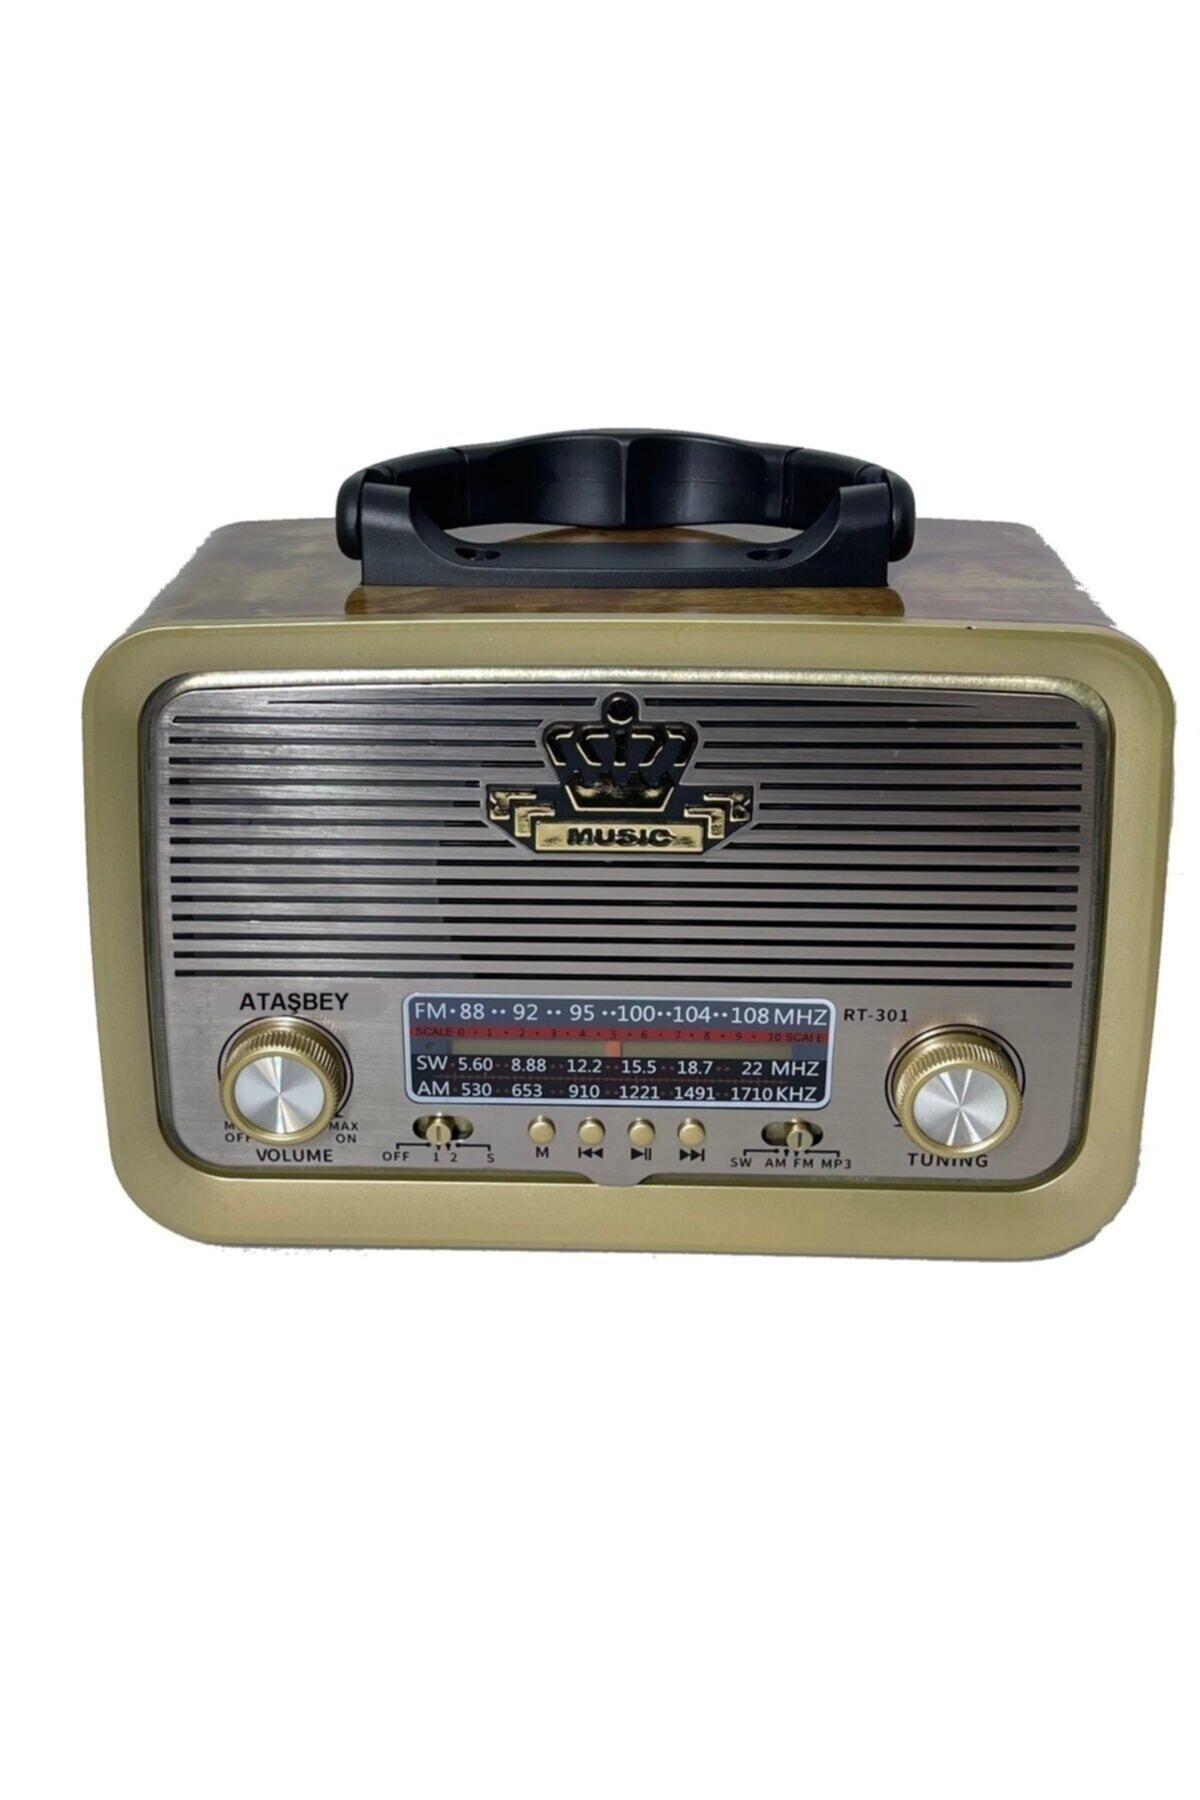 VOLEMI VM-310 RADIO BLUETOOTH RADYO MP3 ÇALAR